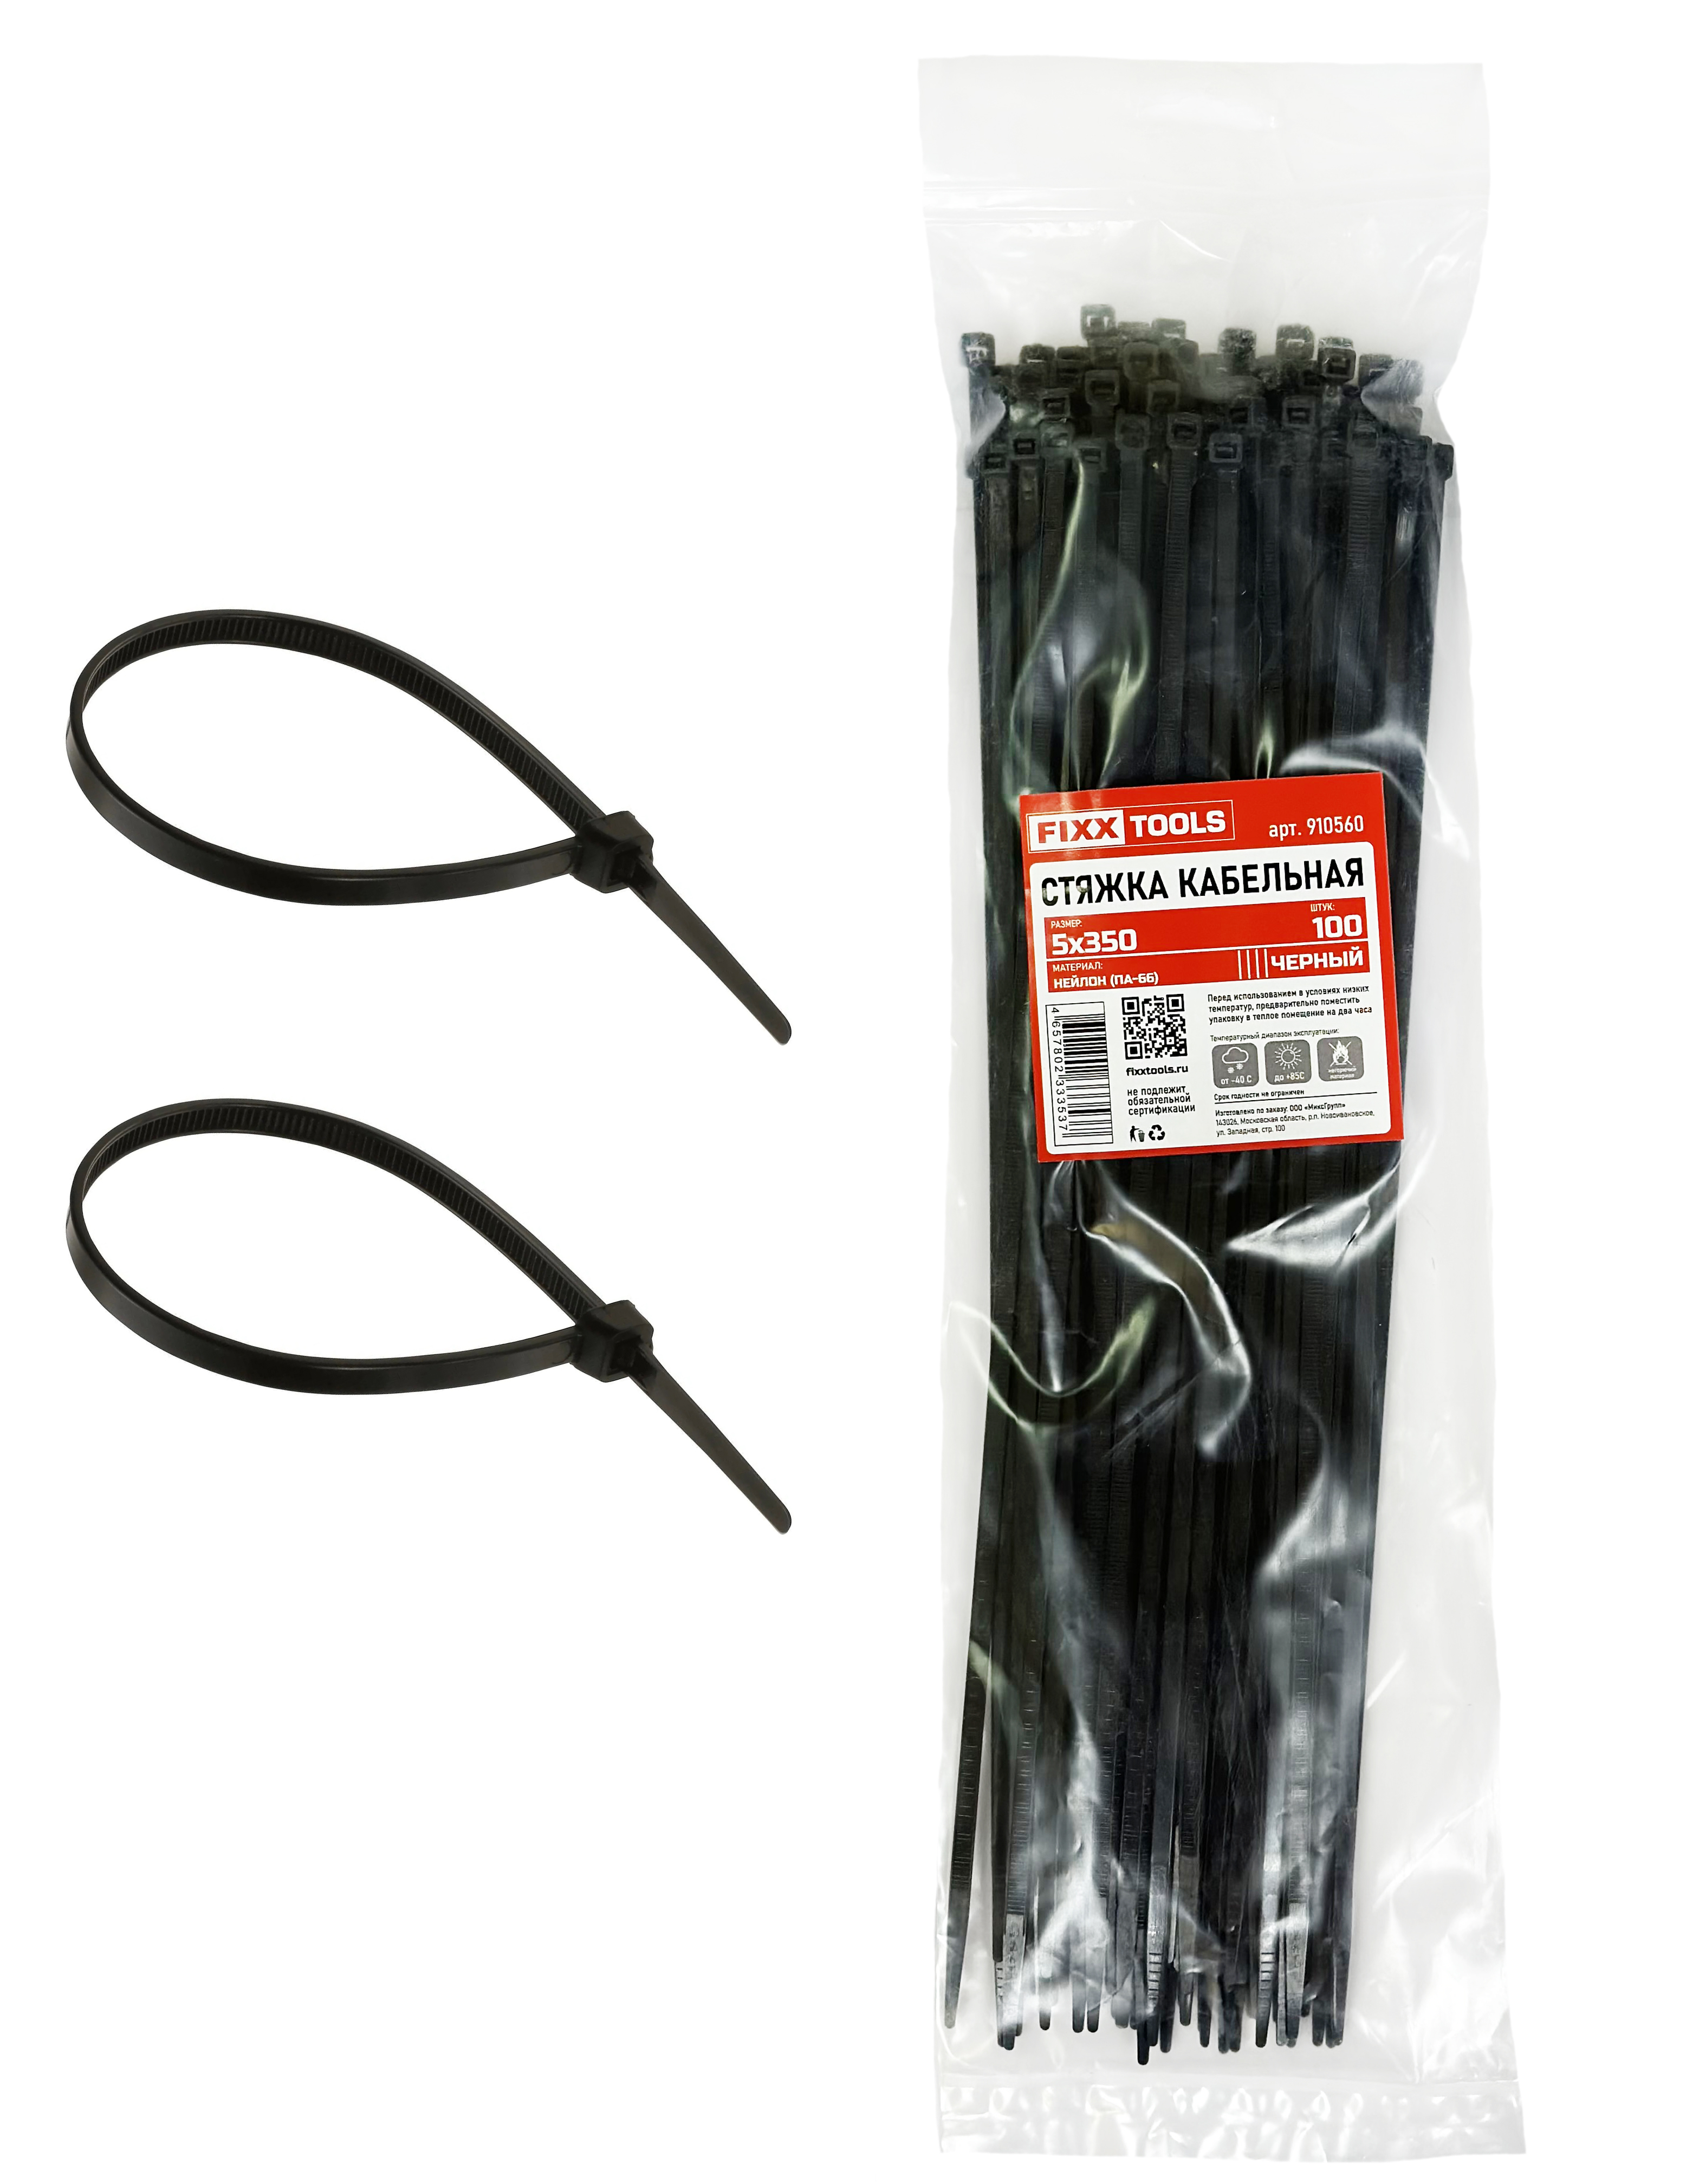 Стяжка кабельная FIXXTOOLS 5х350мм черная упак 100шт 910560 кабельная розетка abs пластик прямая с з 16а 250в ip20 черная 24208 6 rev